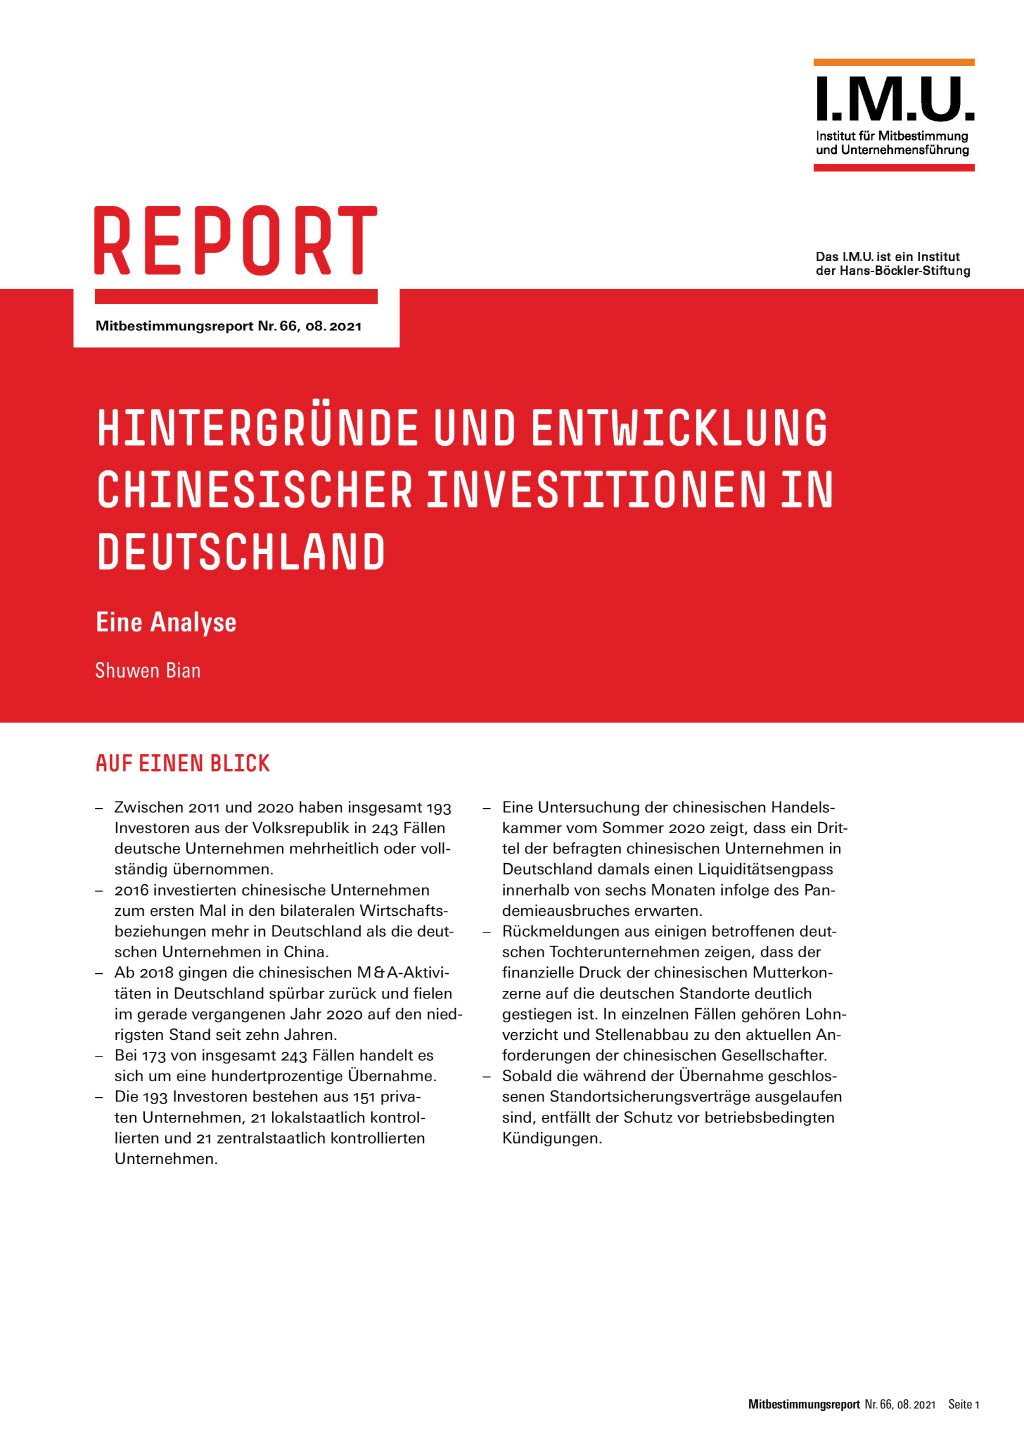 Hintergründe und Entwicklung chinesischer Investitionen in Deutschland